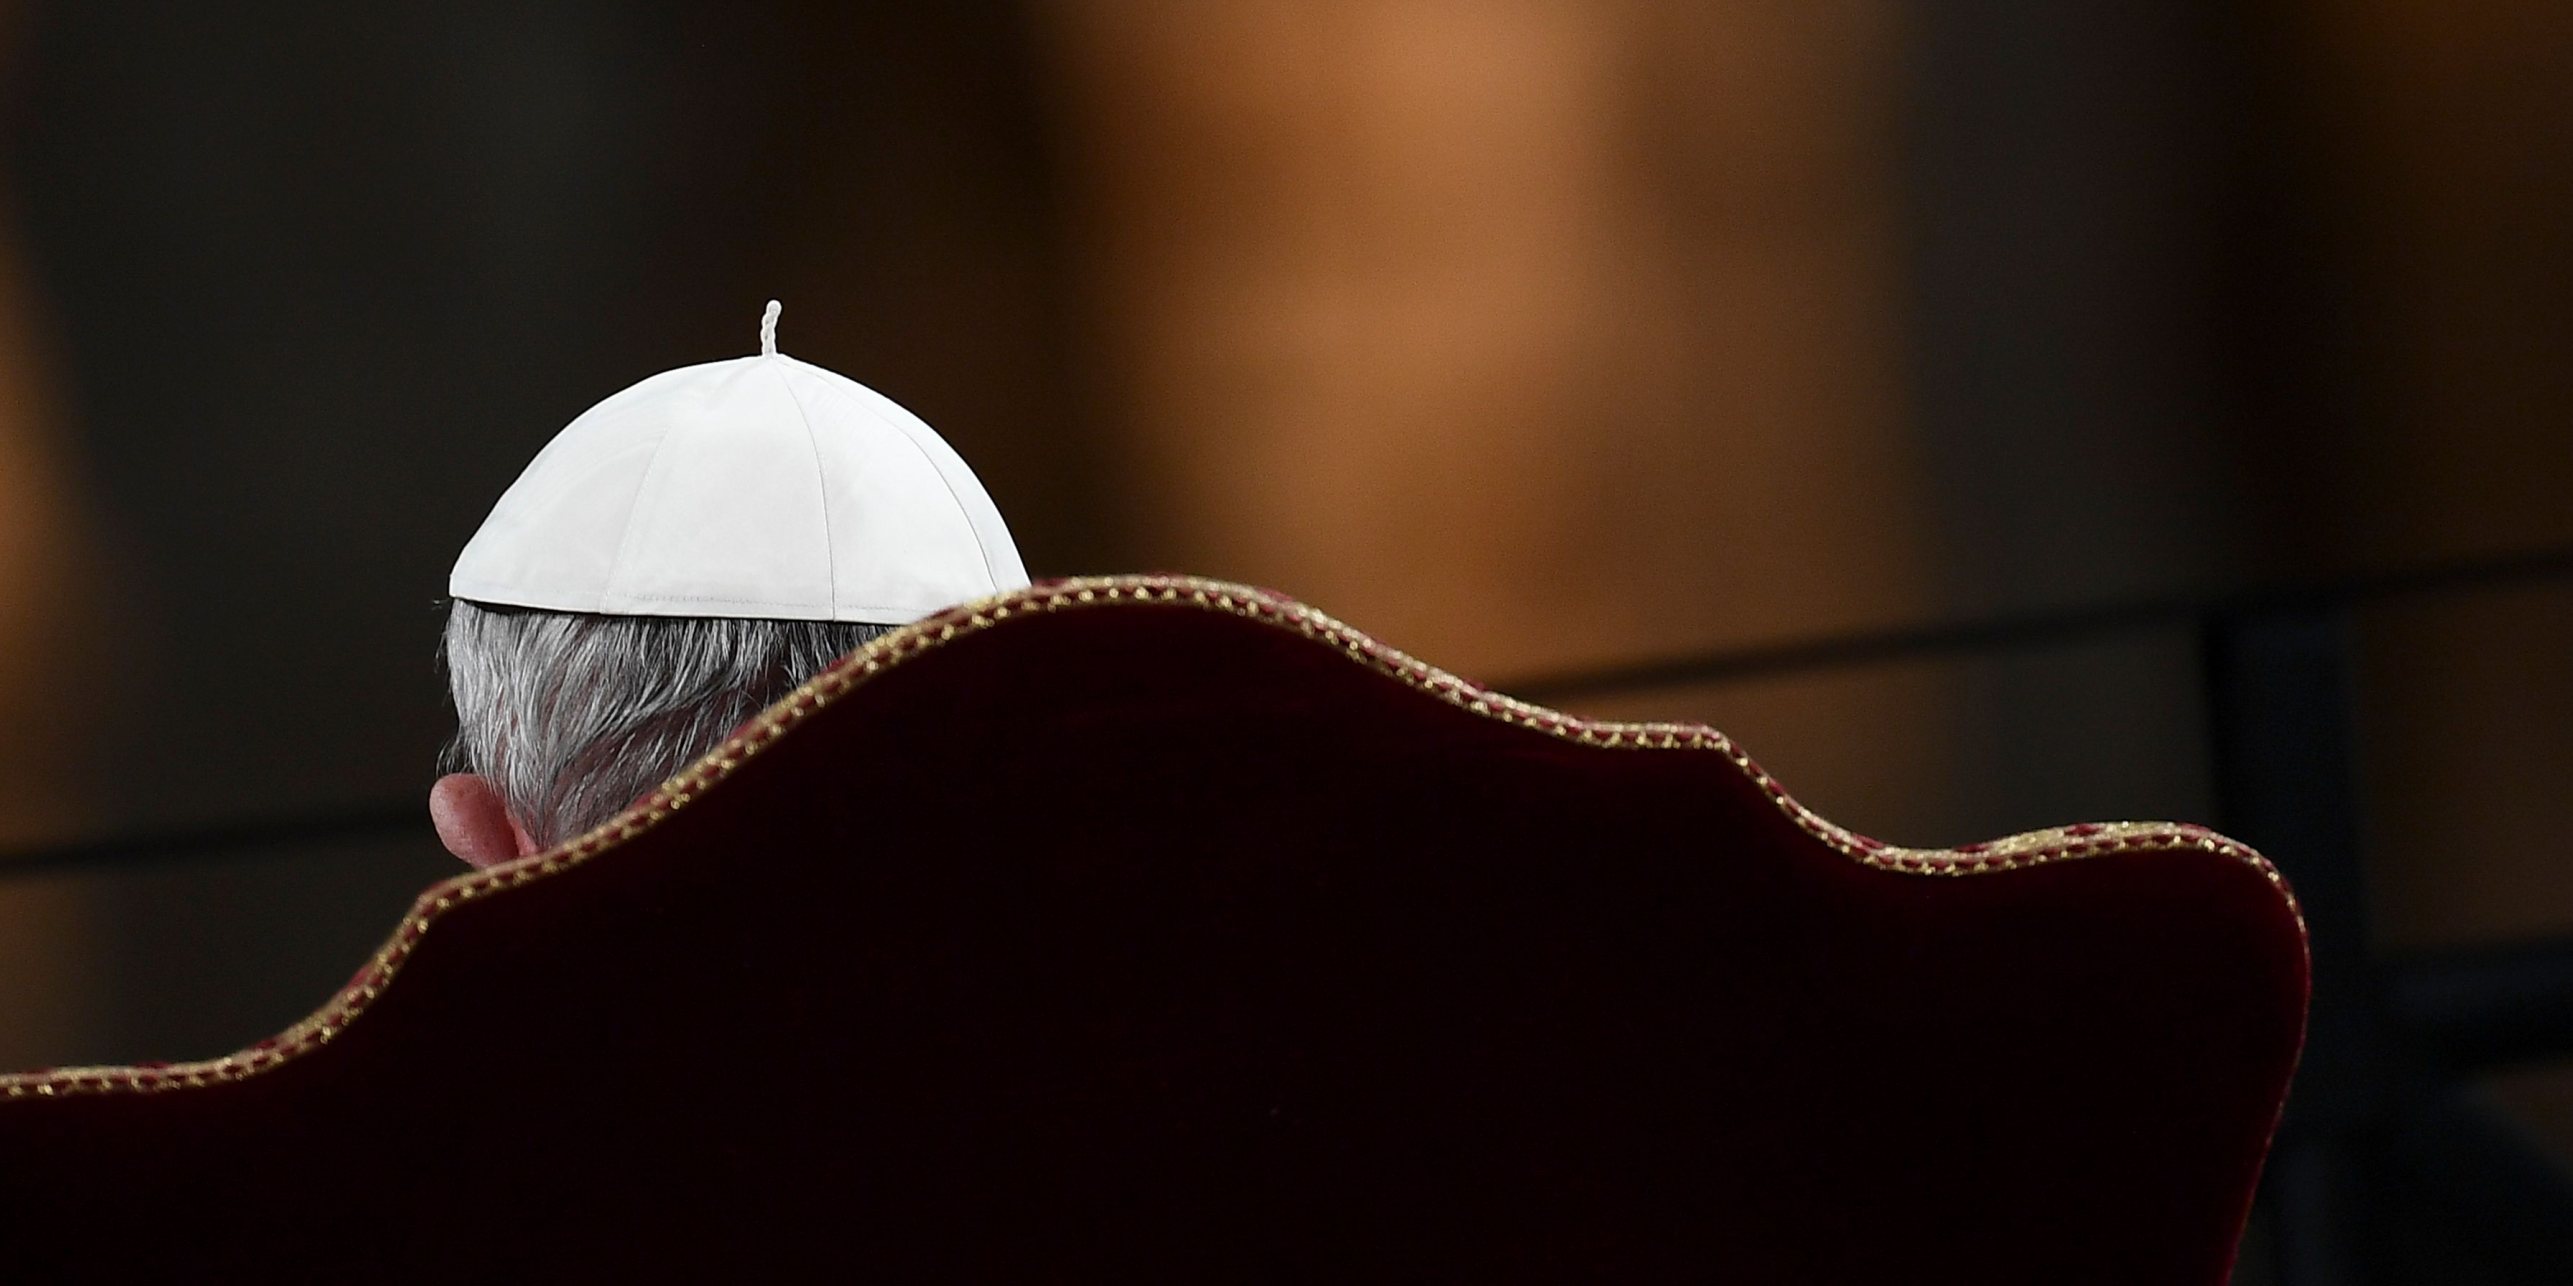 O cardeal Reinhard Marx, arcebispo de Munique, tem liderado um processo de reforma acelerada na Igreja alemã que ameaça resultar num cisma